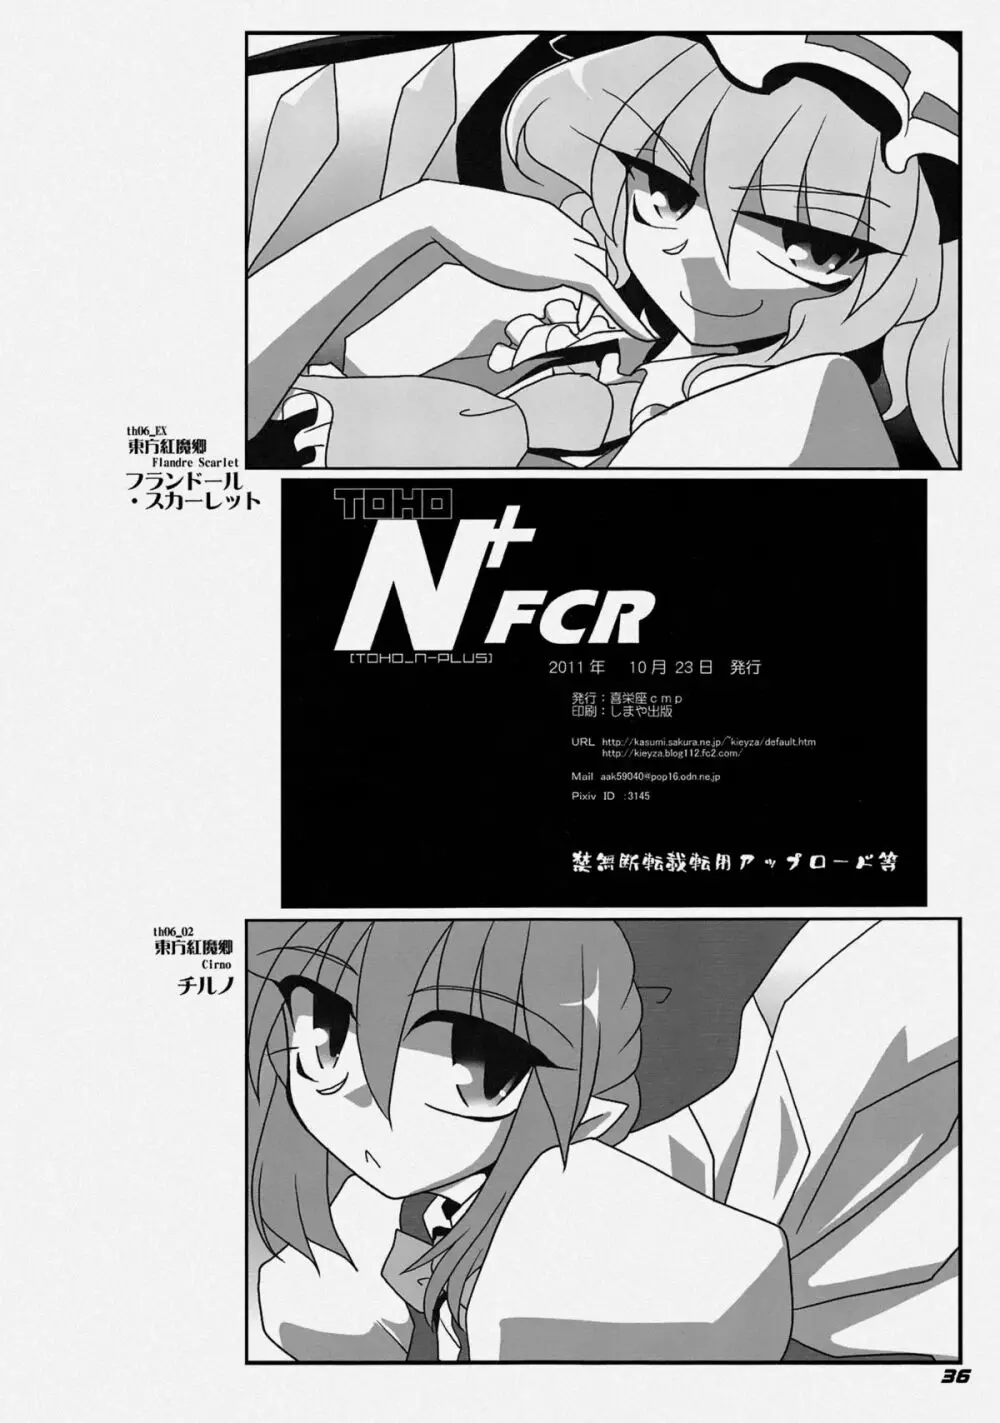 TOHO N+ FCR 39ページ